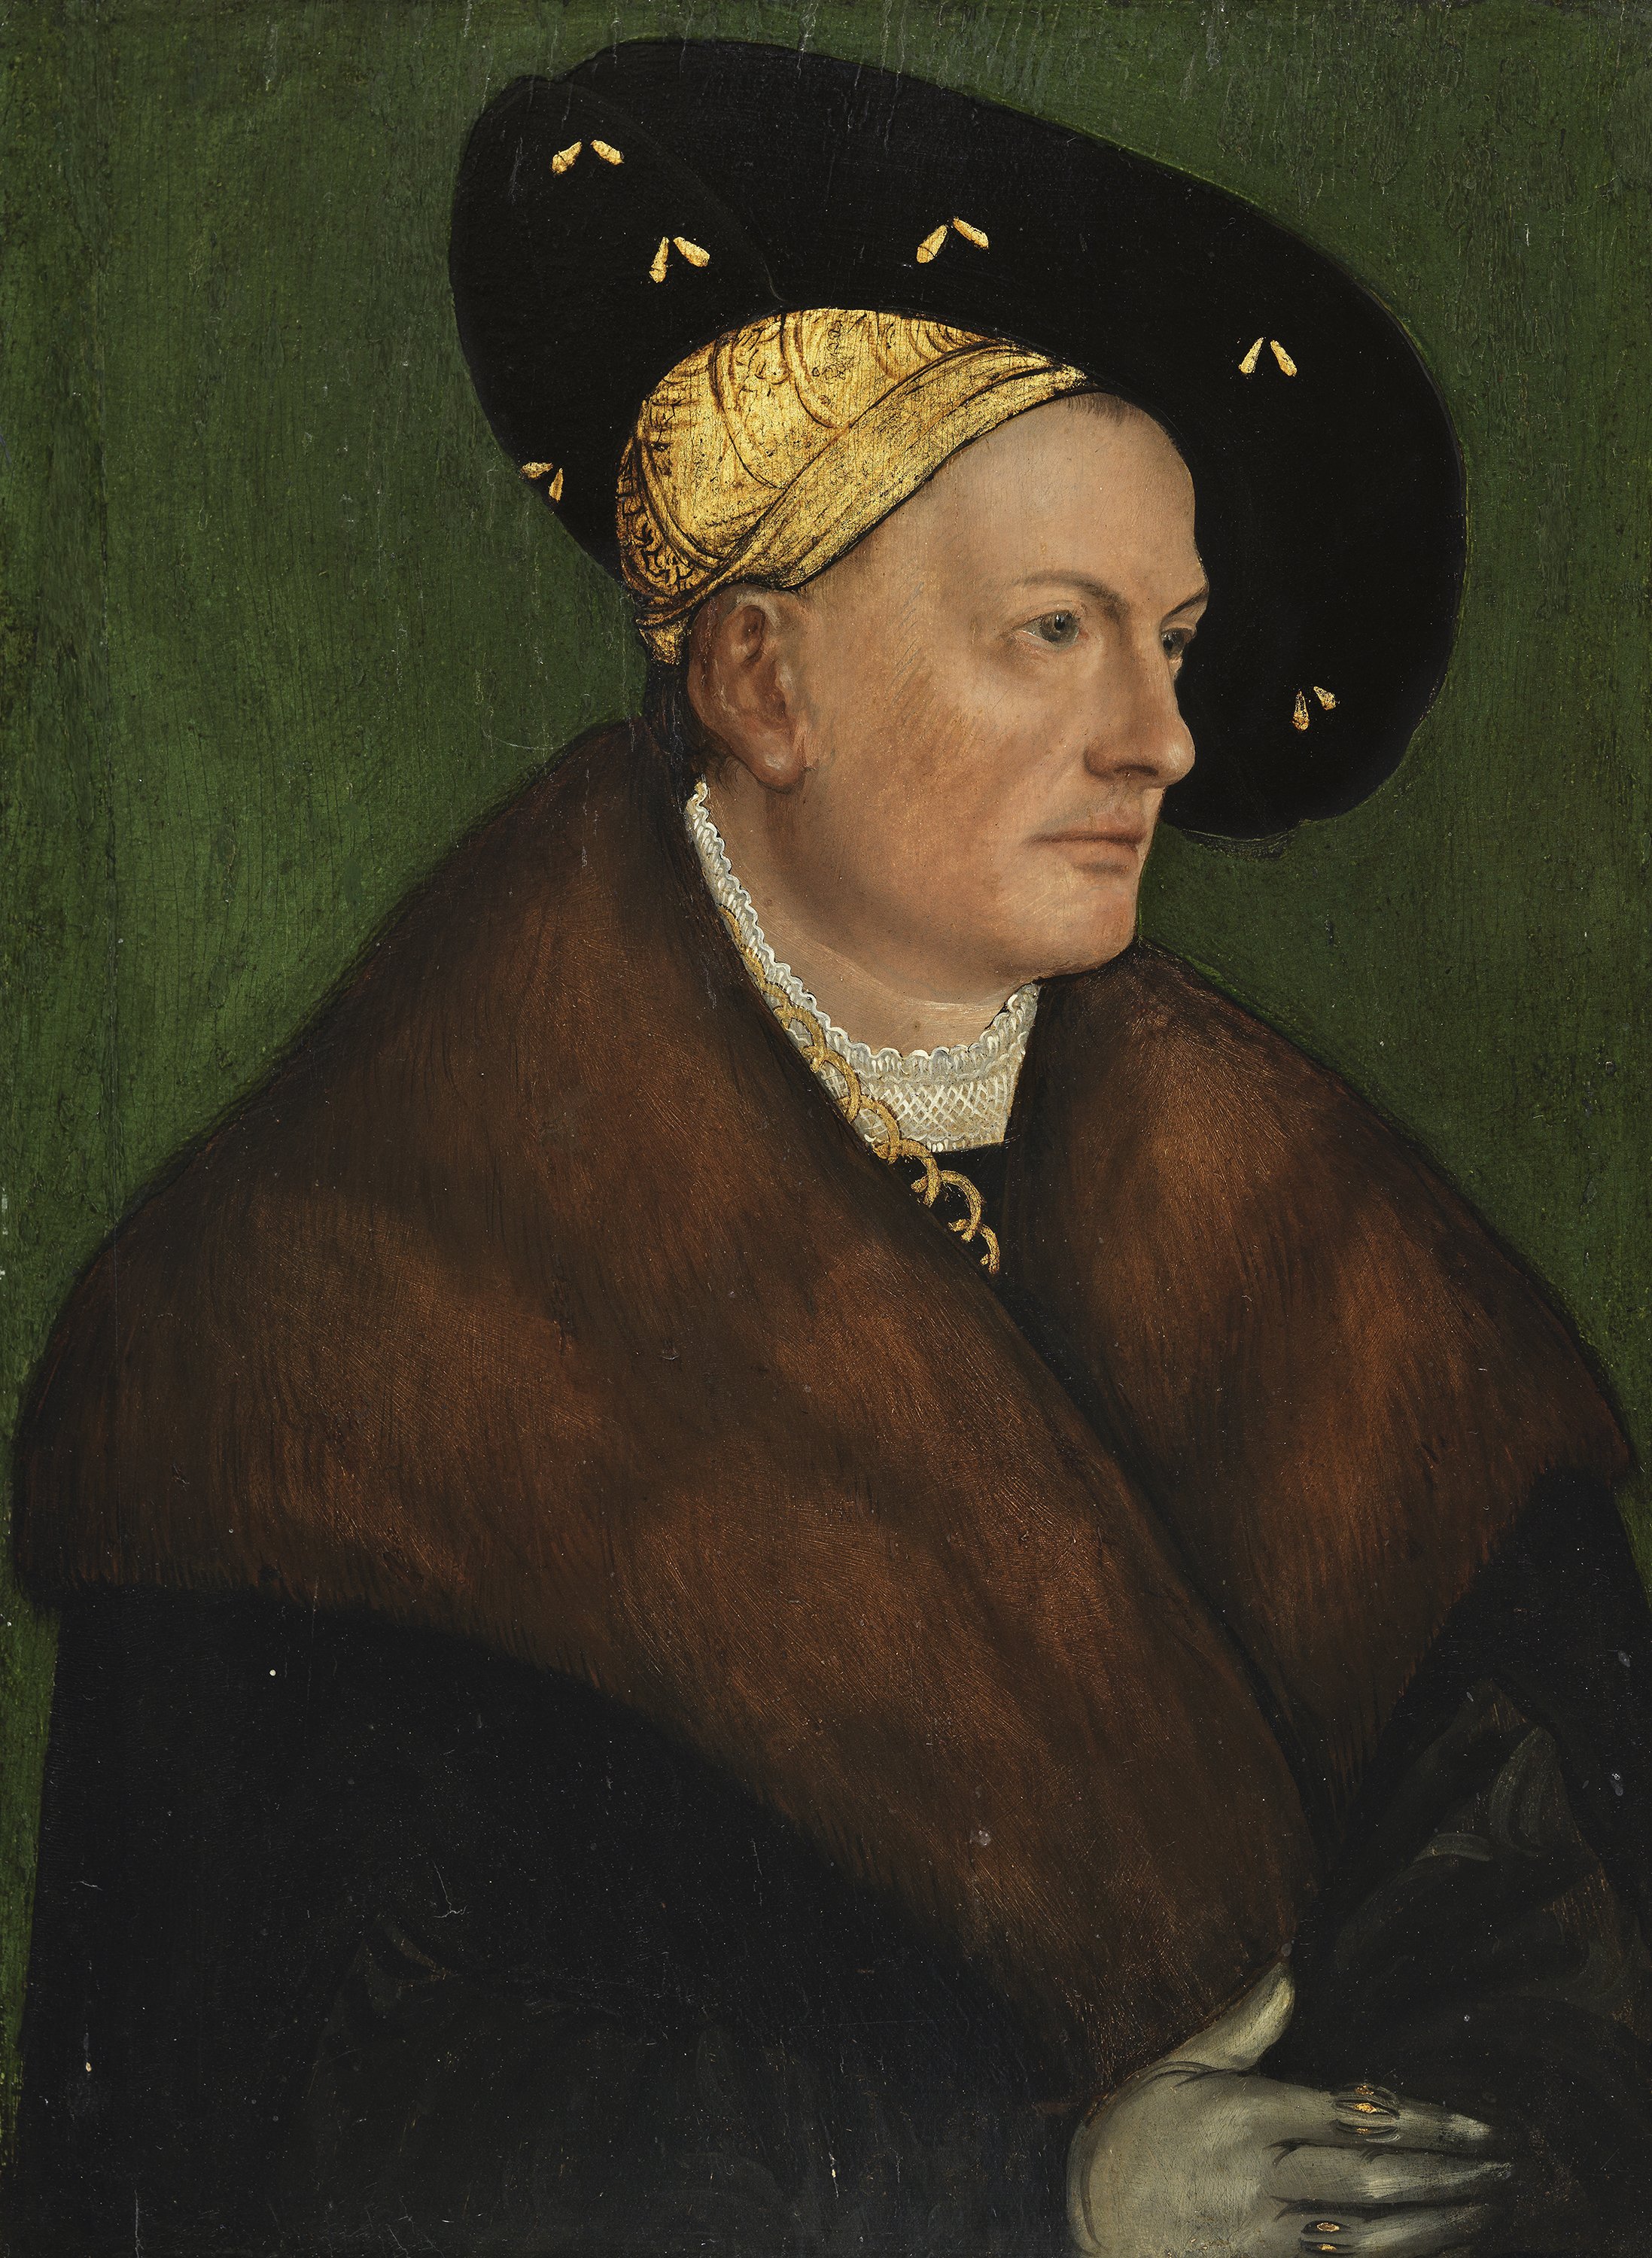 Portrait of a Man (Georg Thurzo?). Retrato de un hombre (¿Georg Thurzo?), 1518